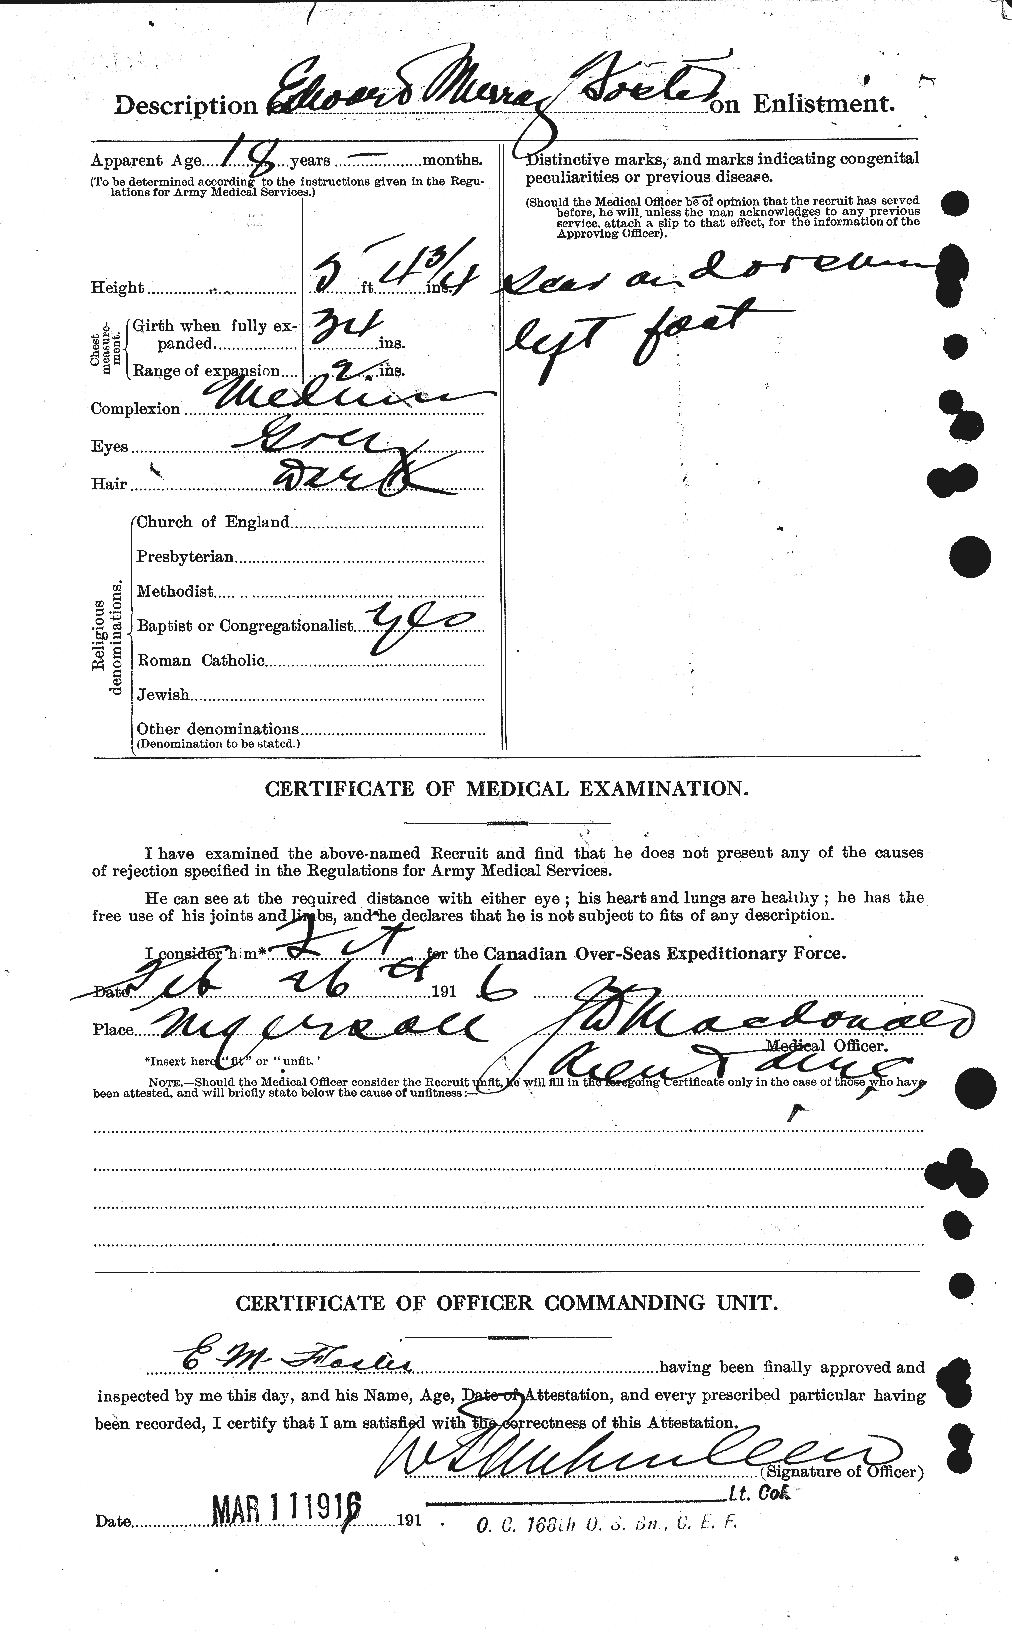 Dossiers du Personnel de la Première Guerre mondiale - CEC 330586b